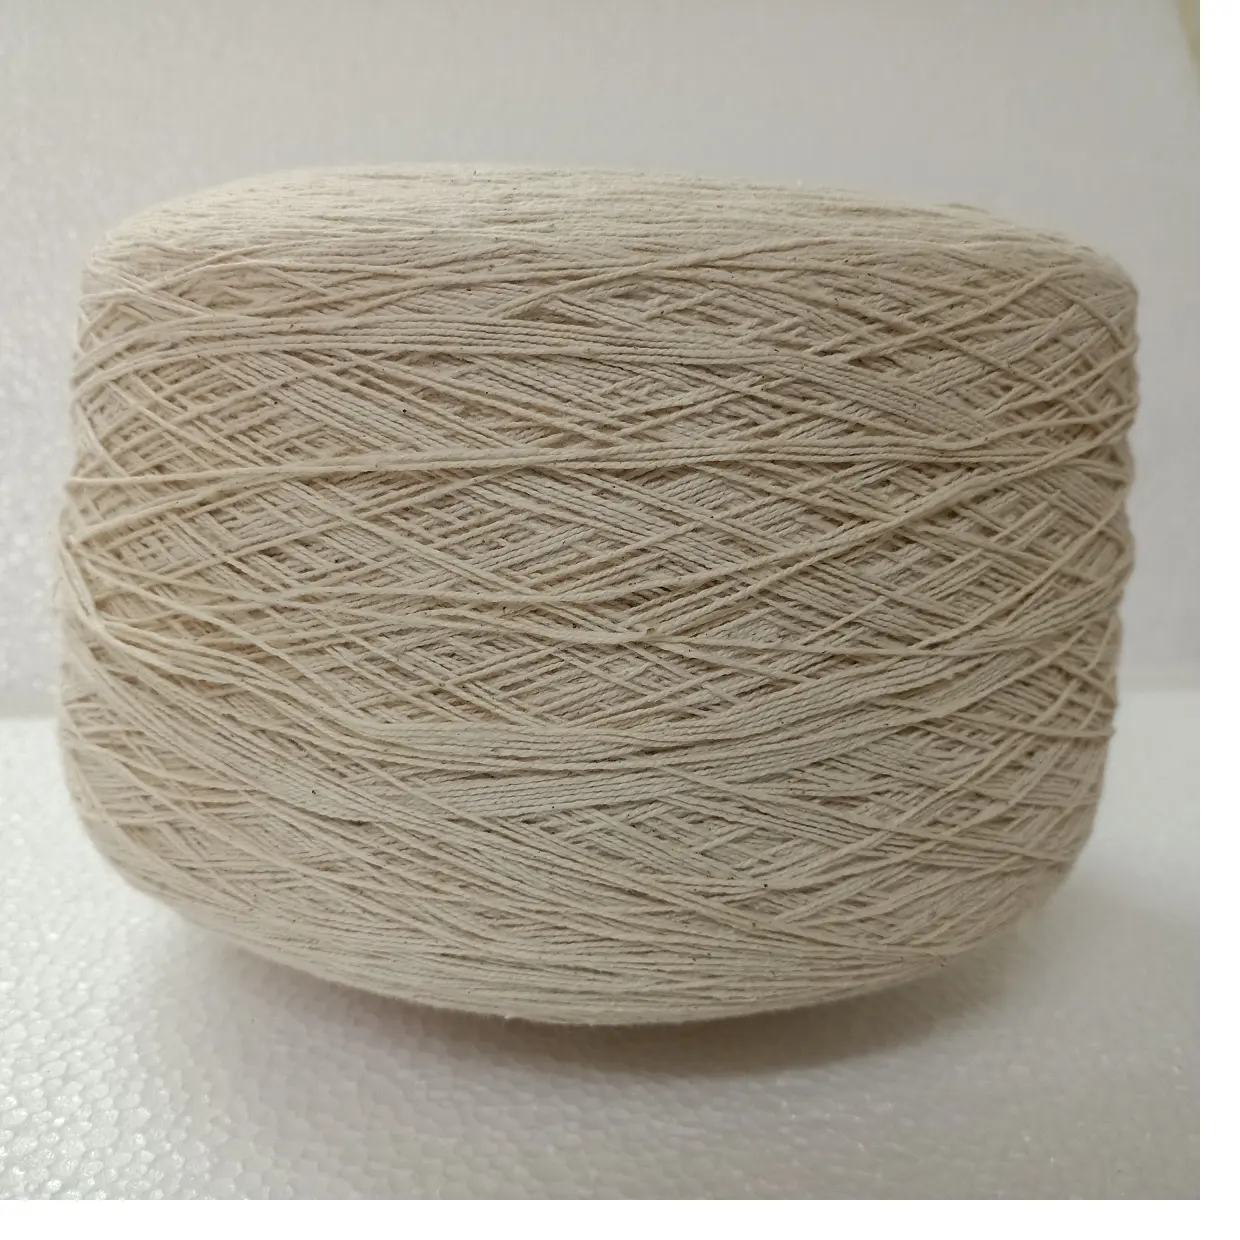 Fil d'aloe vera en fibre naturelle sur mesure 20/2 NM idéal pour les magasins de fils et de fibres adaptés aux artistes textiles